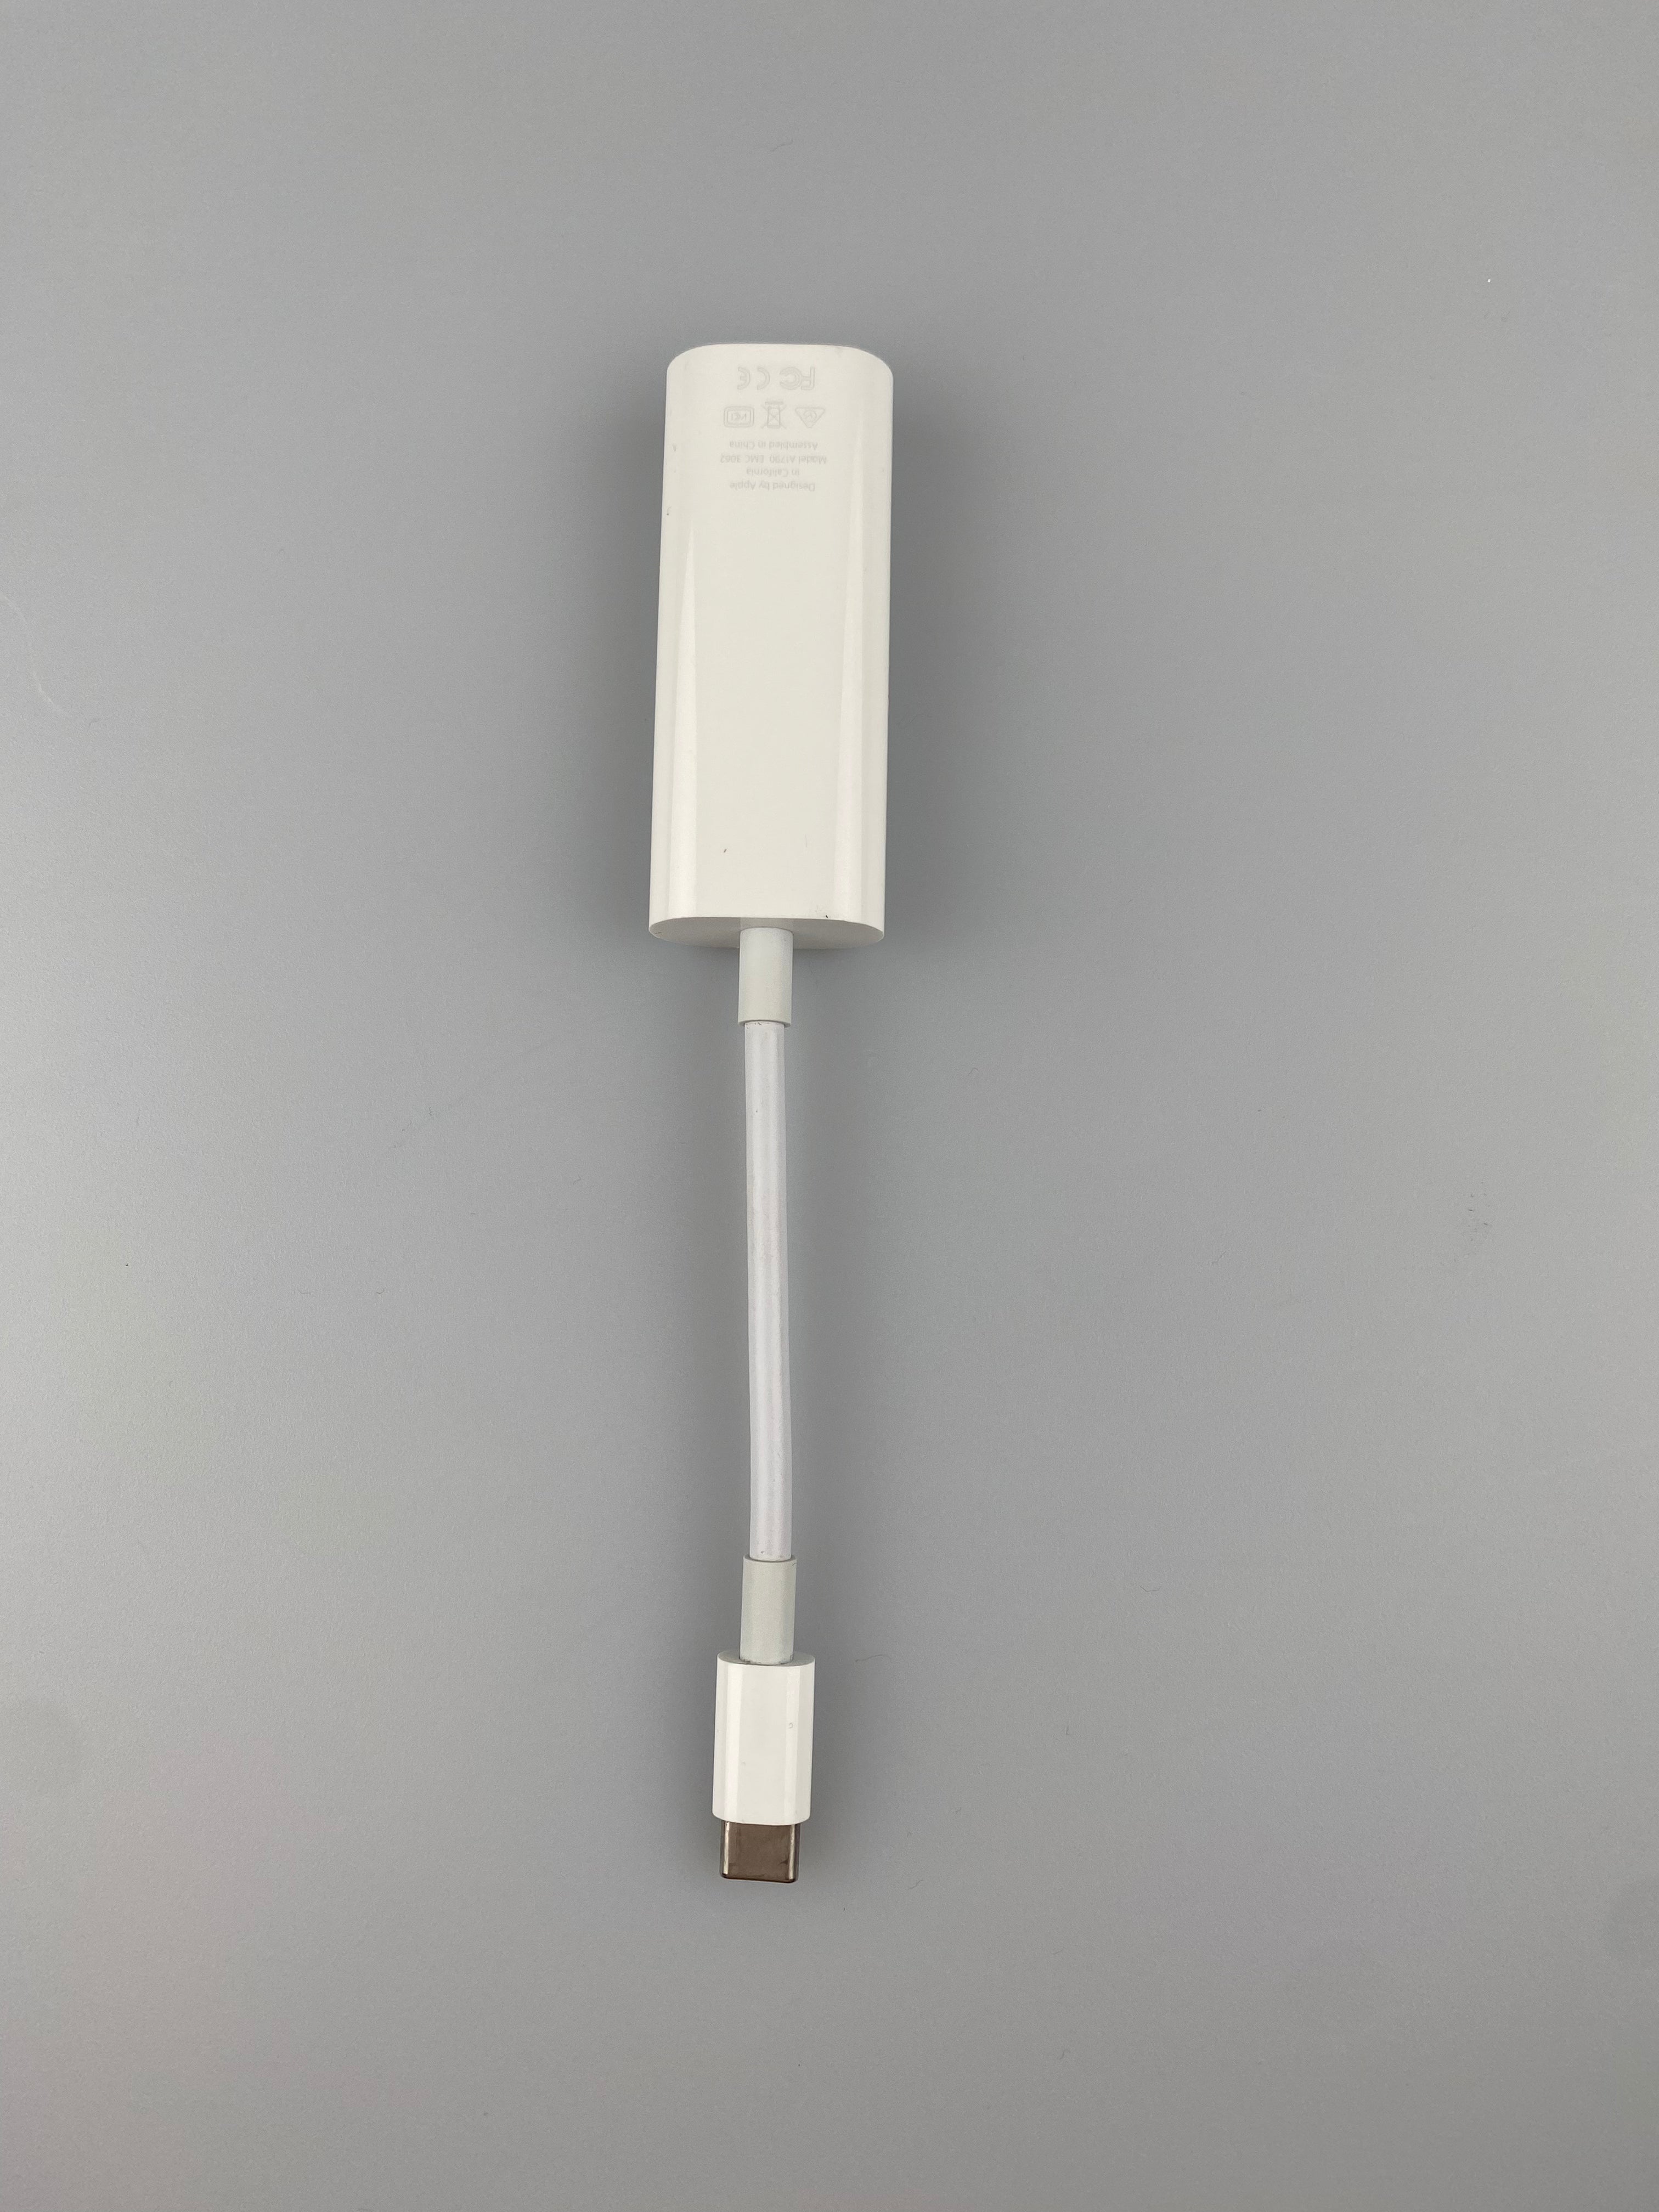 Apple A1790 EMC 3062 Thunderbolt 3 to Thunderbolt 2 Adapter